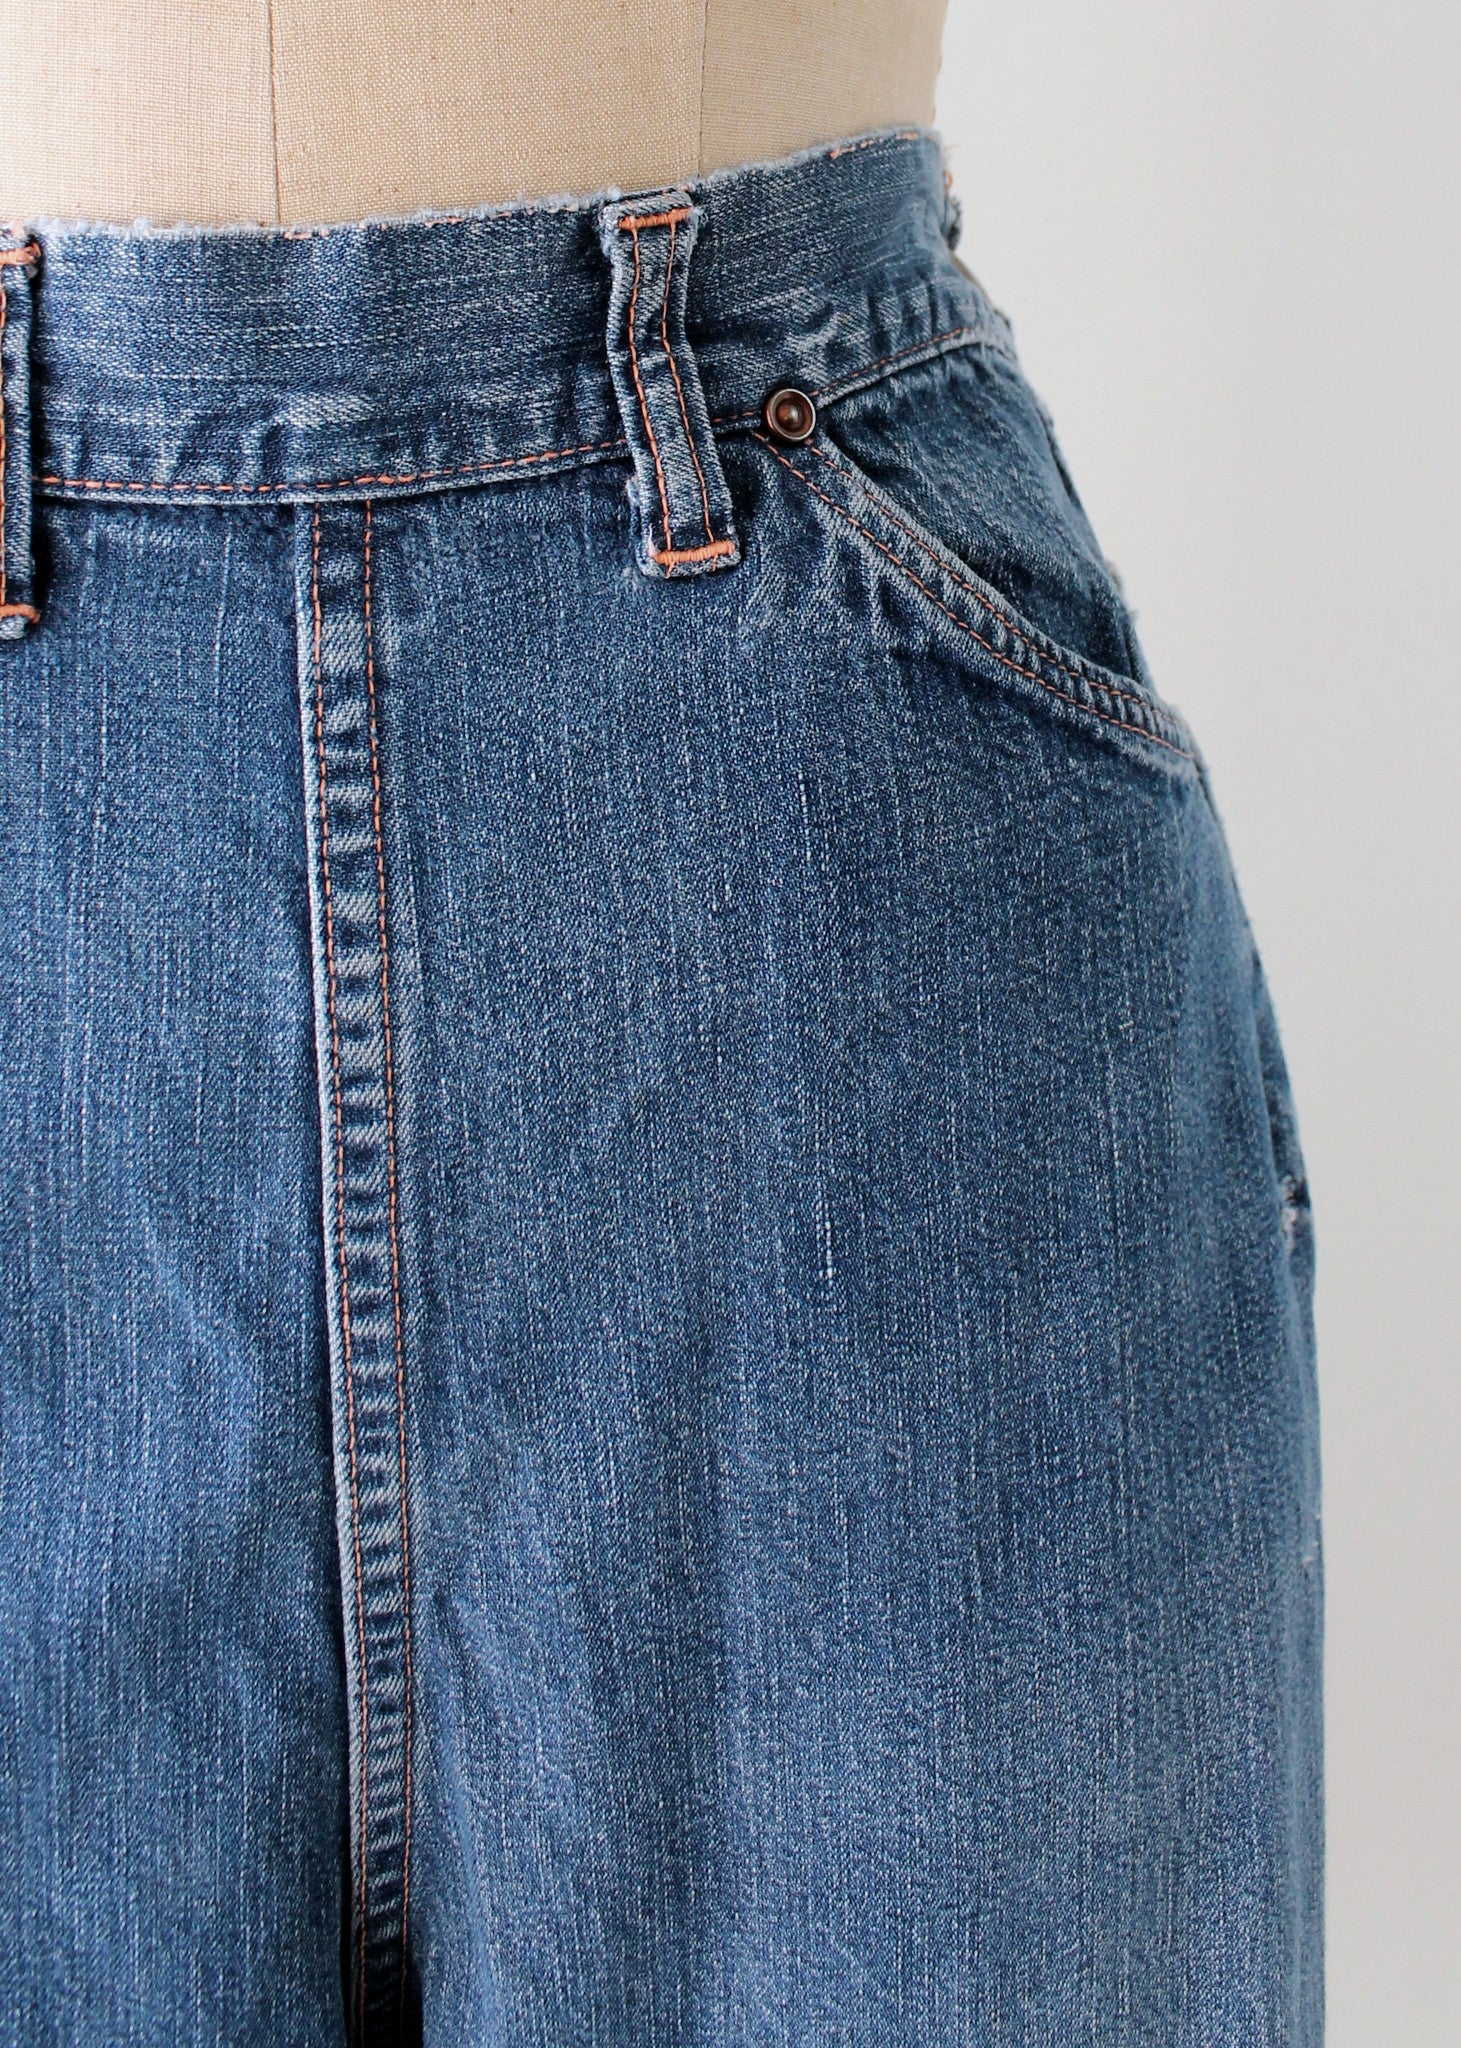 Vintage 1950s Distressed Denim Jeans - Raleigh Vintage